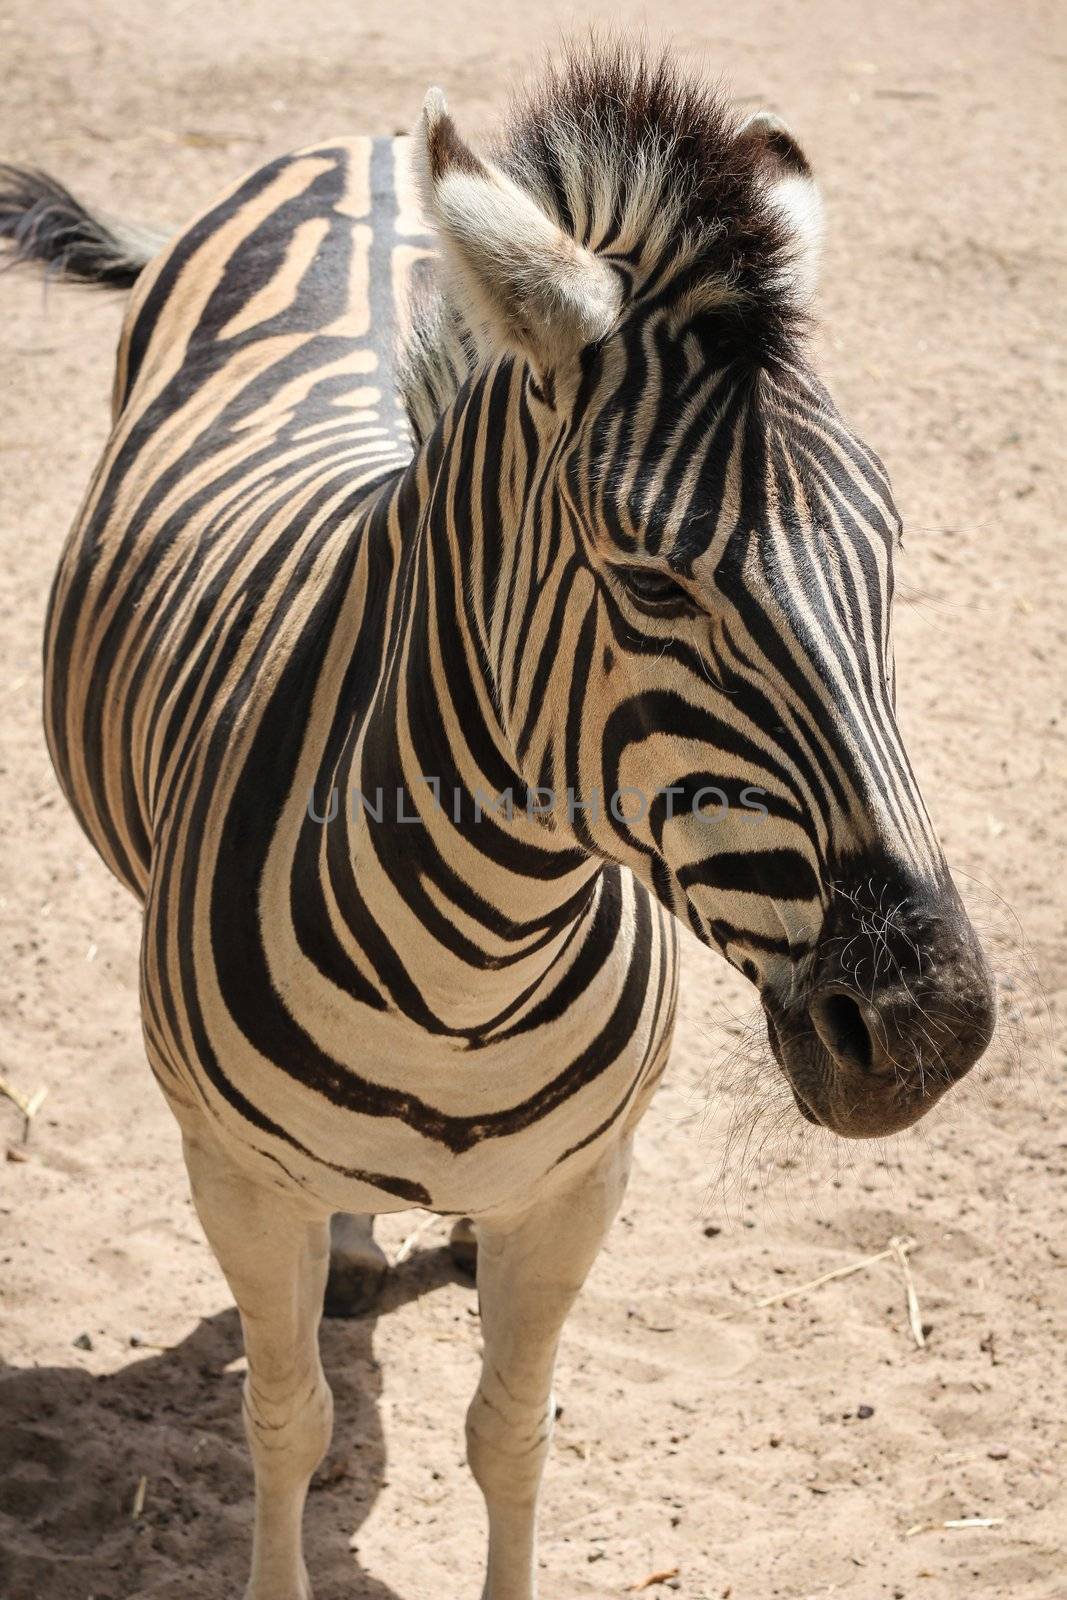 Standing Zebra by dwaschnig_photo